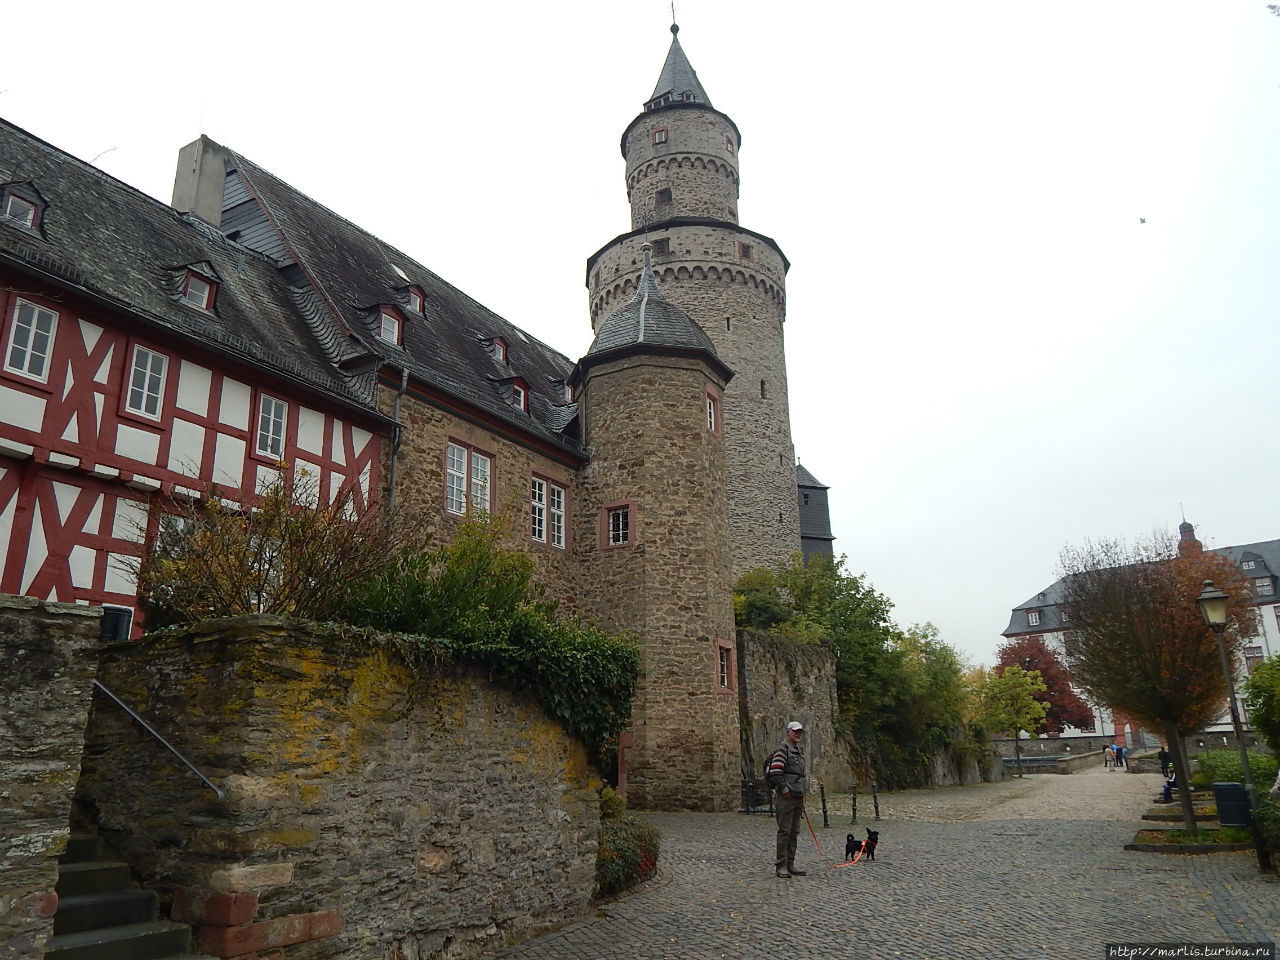 Ведьмина башня Идштайнского замка. Идштайн, Германия